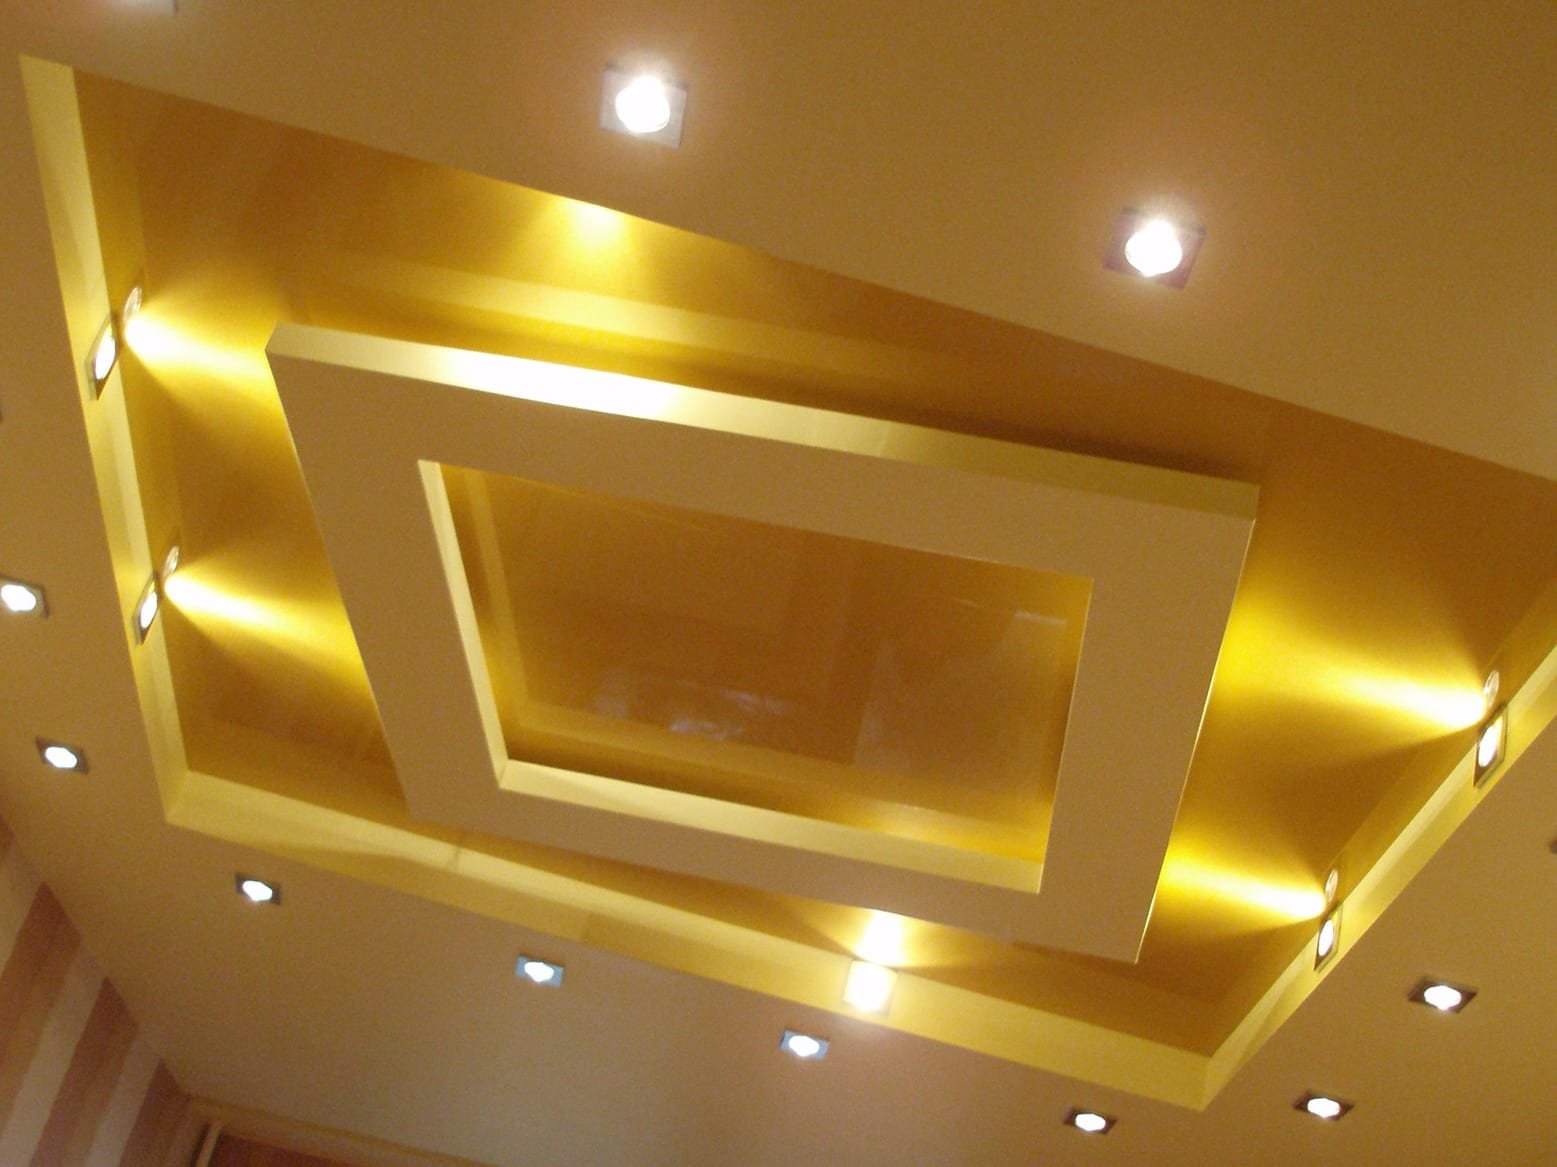 Золотой натяжной потолок в интерьере